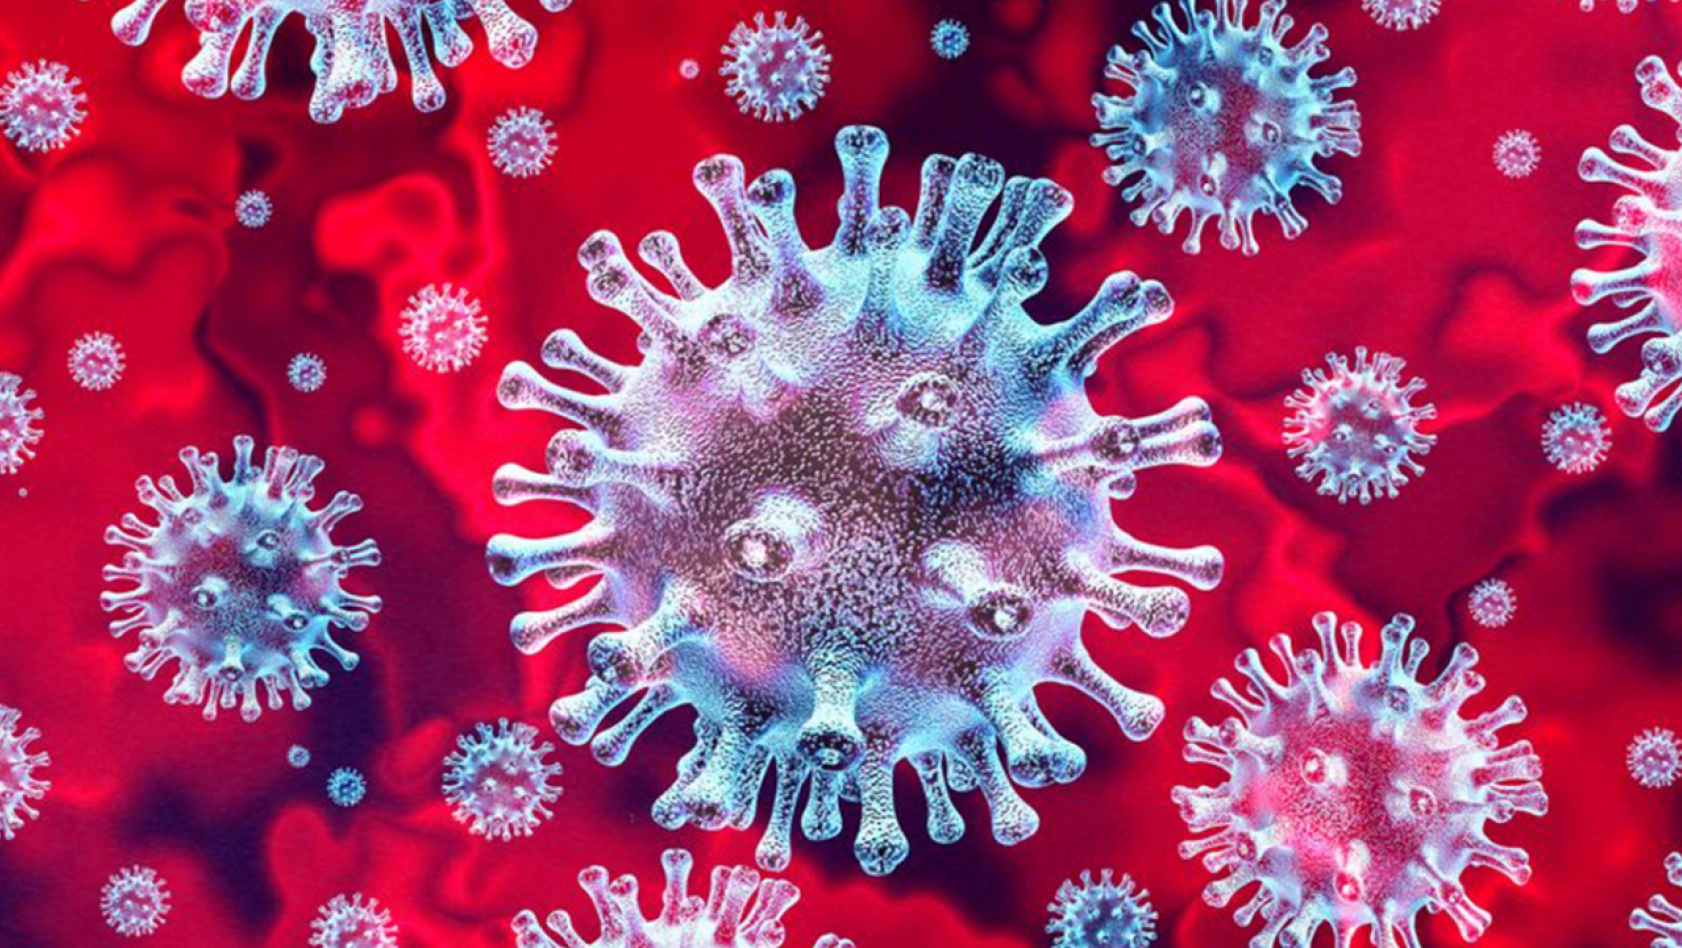 Covid-19 virüsü mutasyon geçirmeyi sürdürüyor